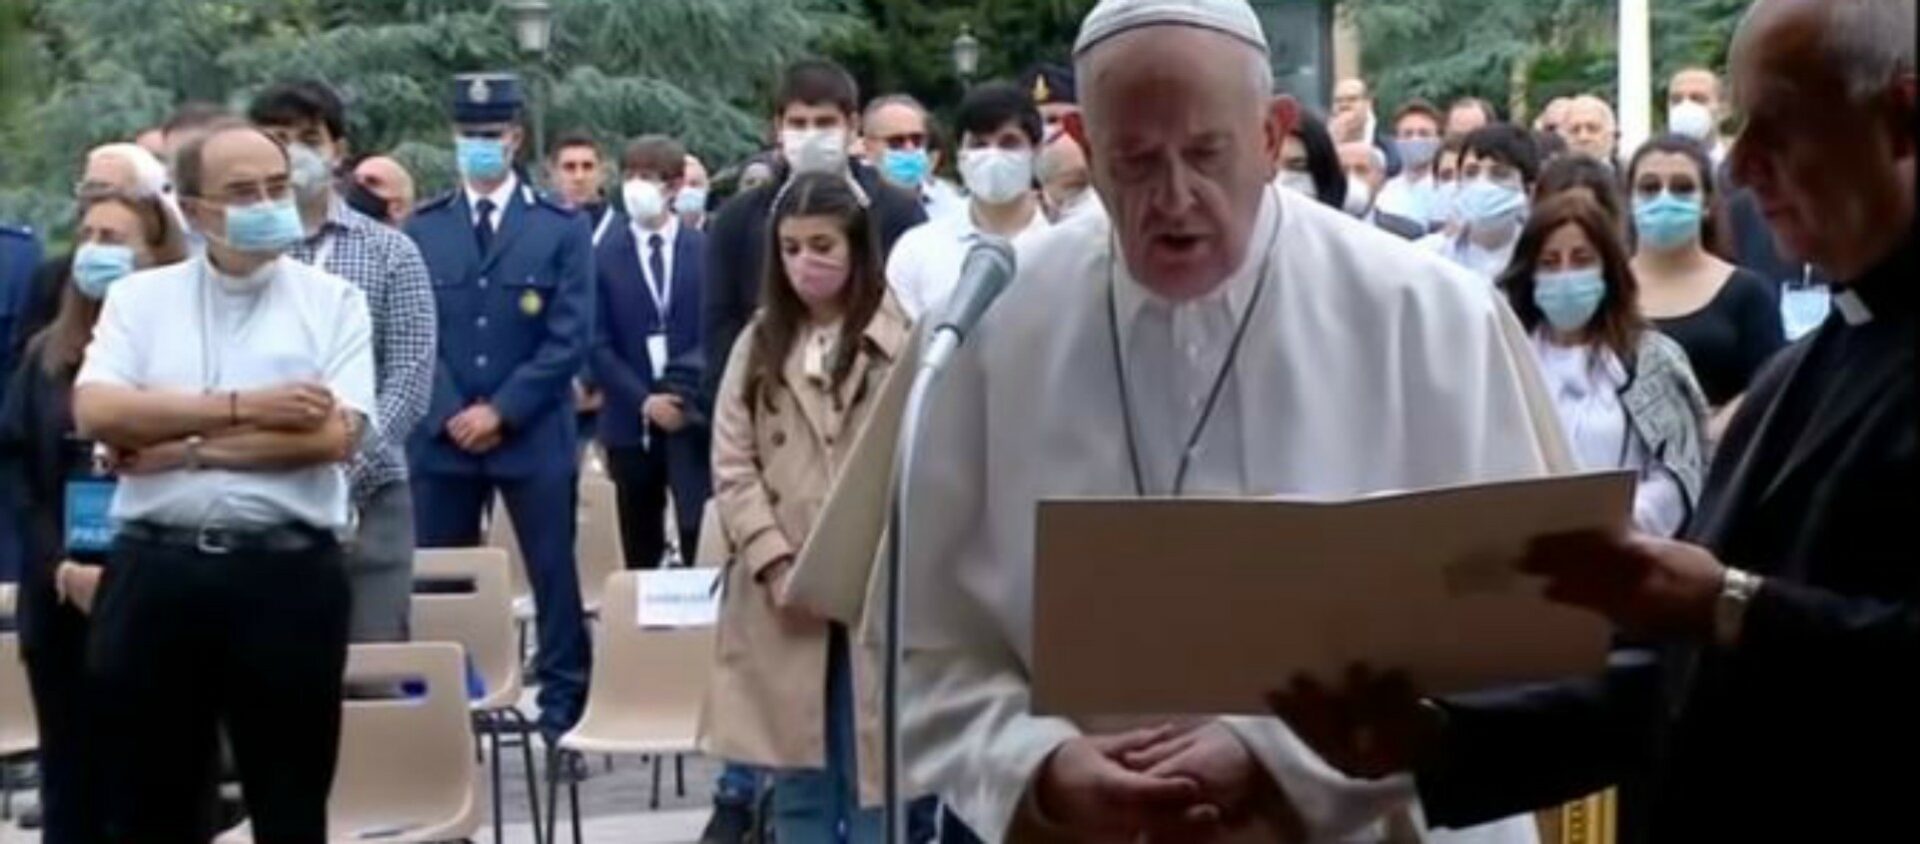 Dans le cadre de la pandémie, le pape François doit gérer son rapport avec le public  | © Vatican News